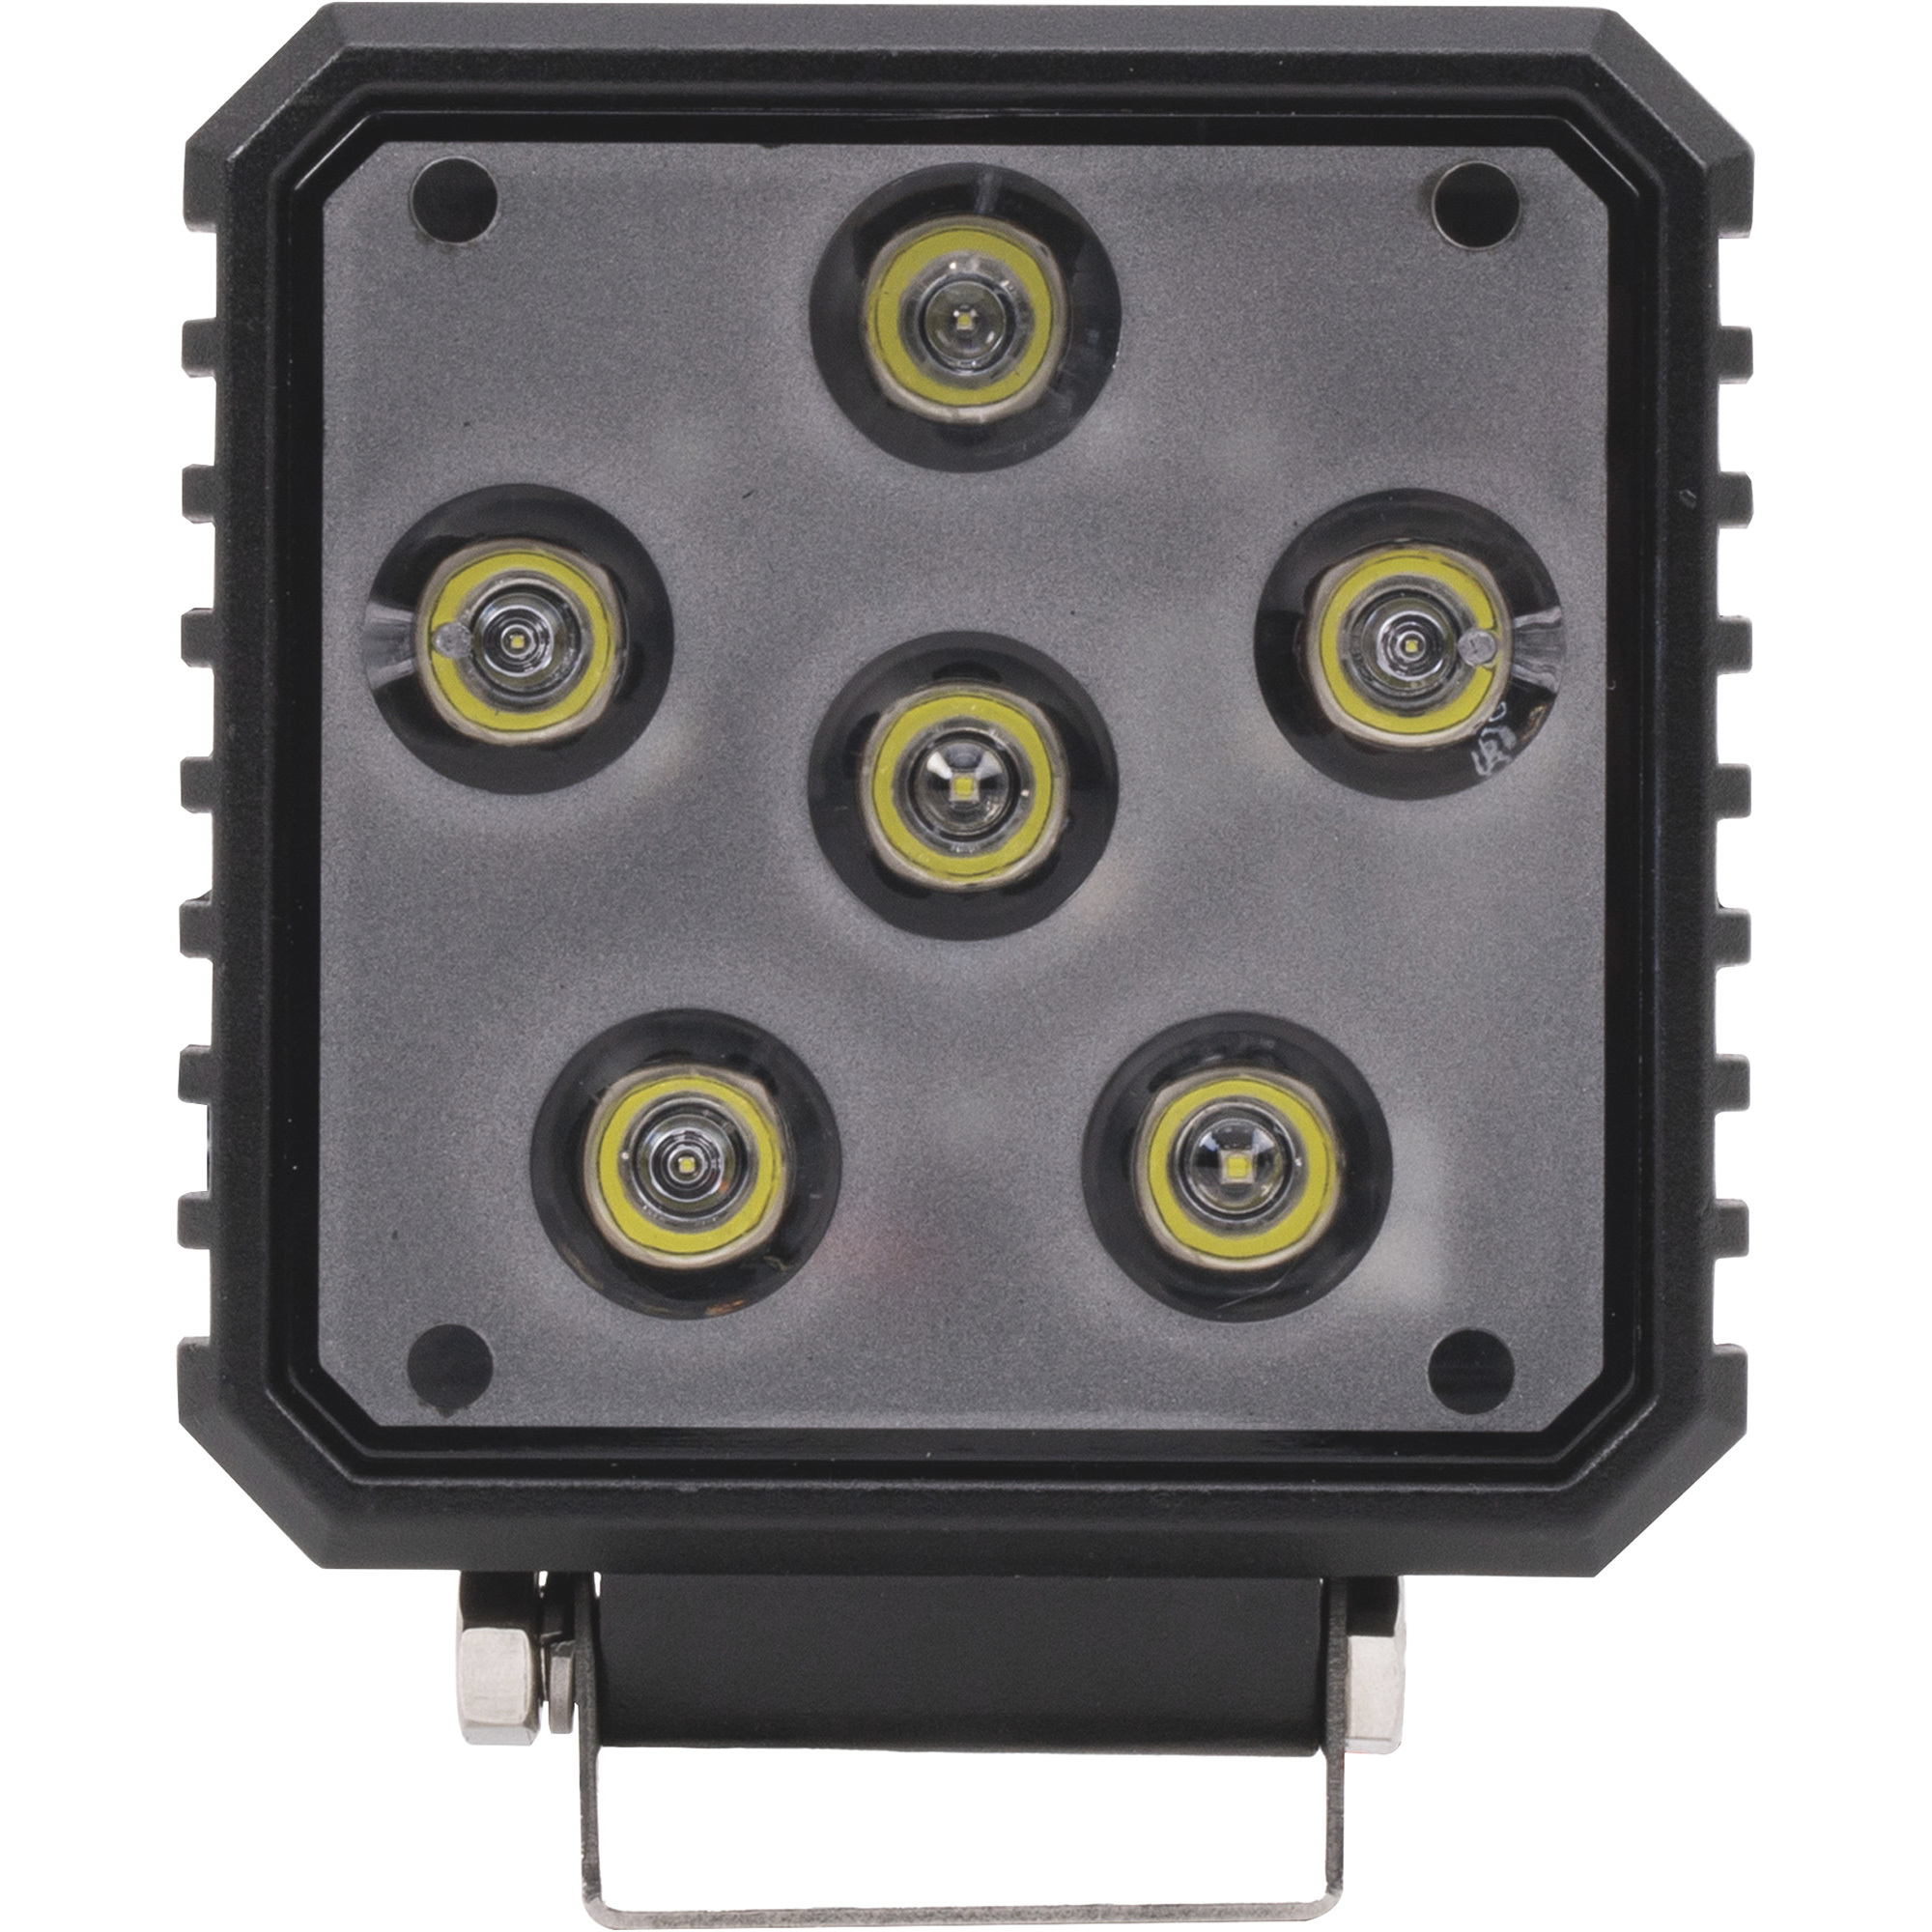 Blazer 12 Volt LED Utility Flood Light â 4Inch, Square, 2000 Lumens, Model CWL5042